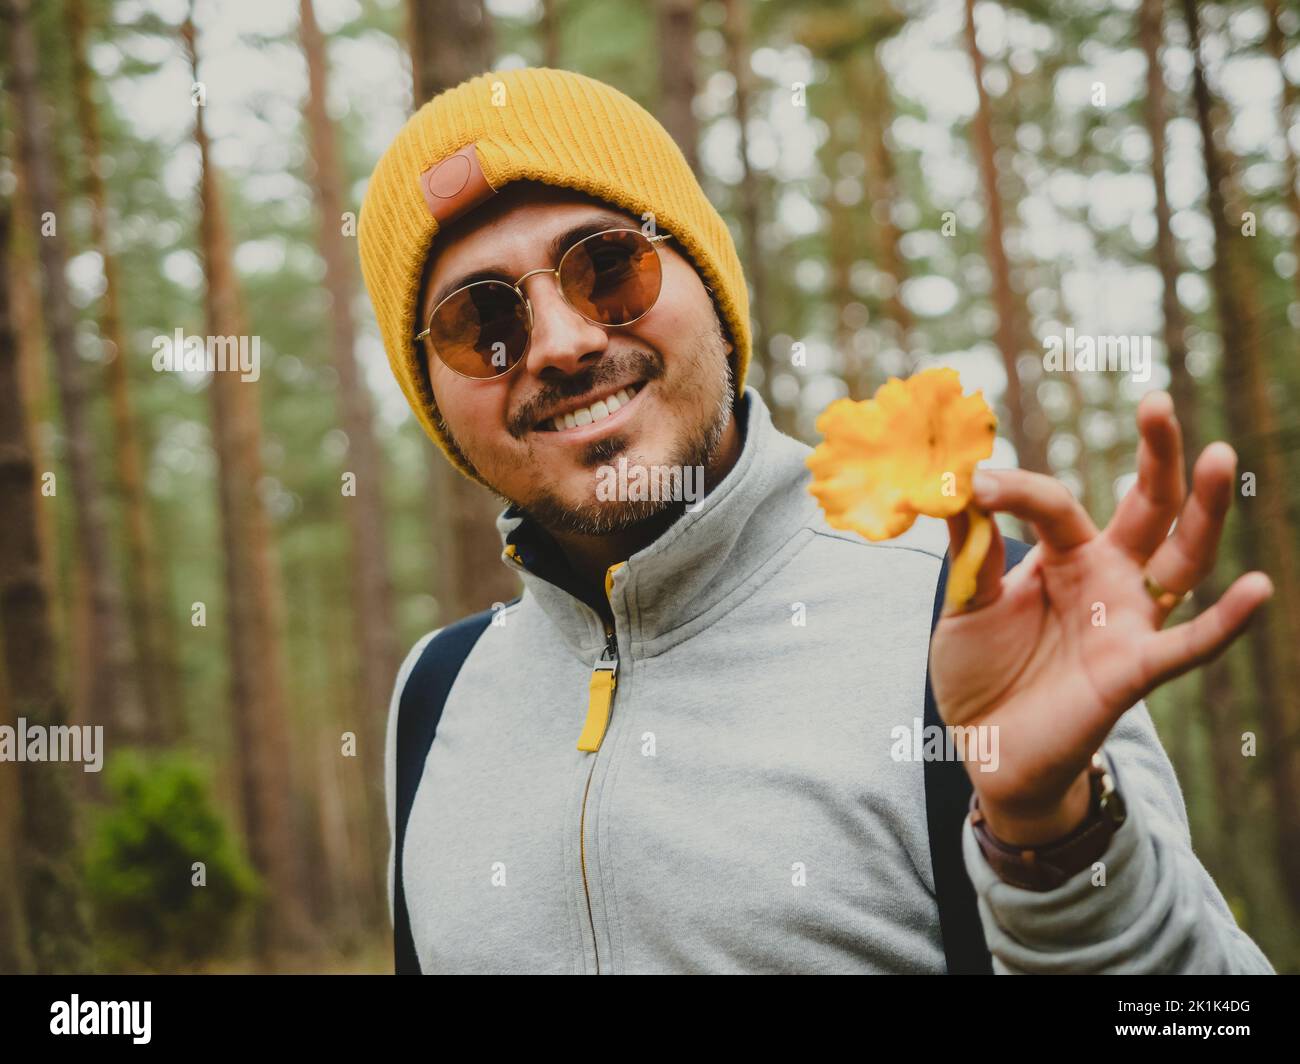 Lächelnder, hübscher junger Mann findet im Herbst in tiefen Kiefernwäldern Pilze Stockfoto